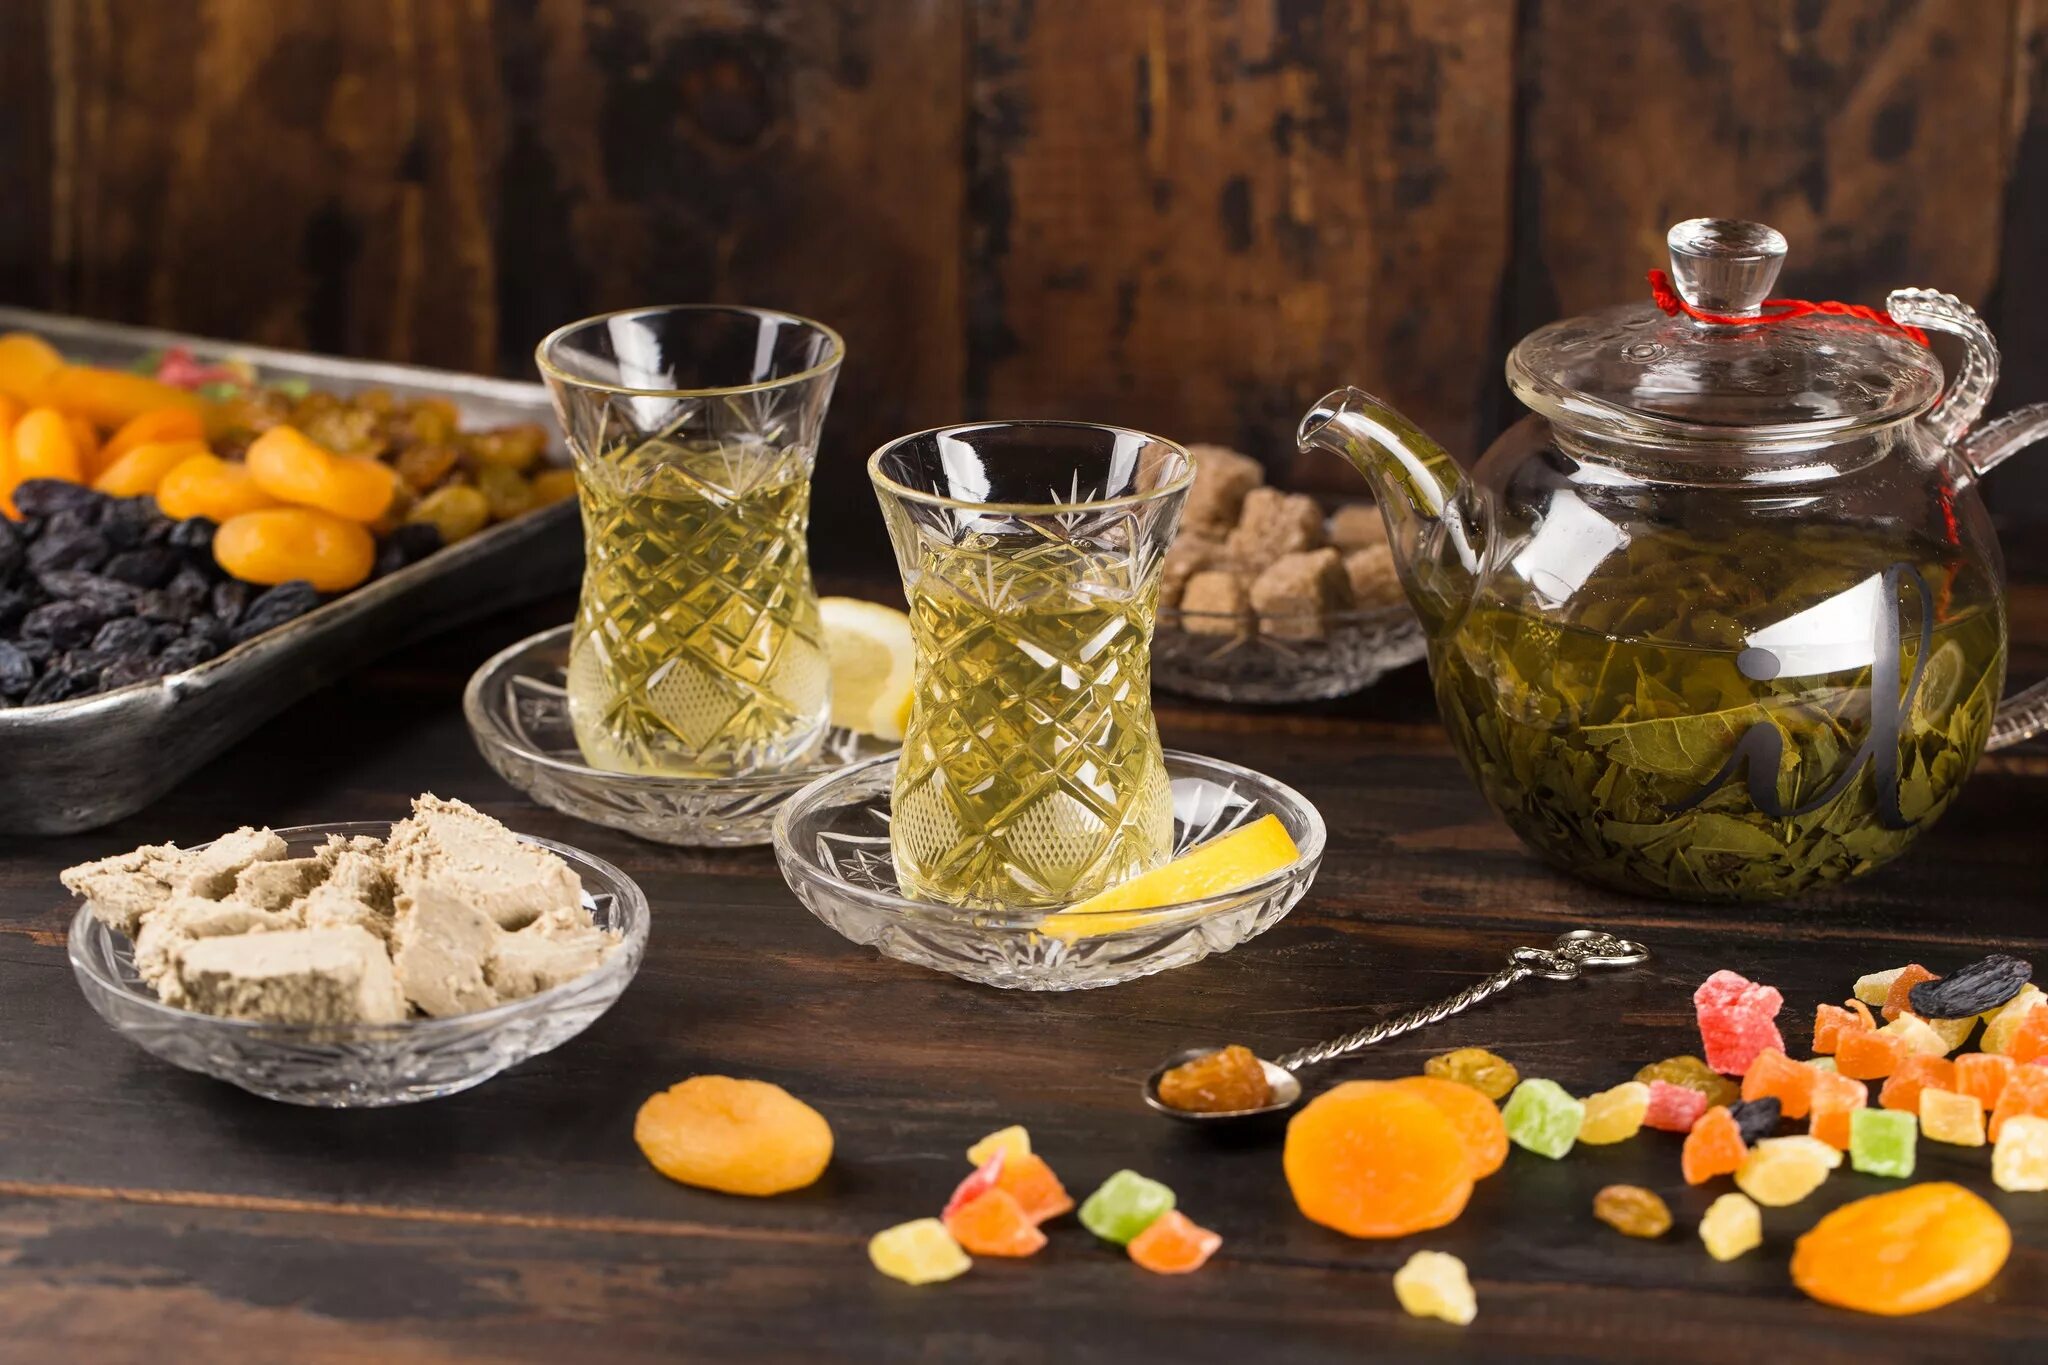 Турецкий чай шалфей. Турецкий зеленый чай Anadolu. Чай с сухофруктами. Фруктовый и травяной чай.